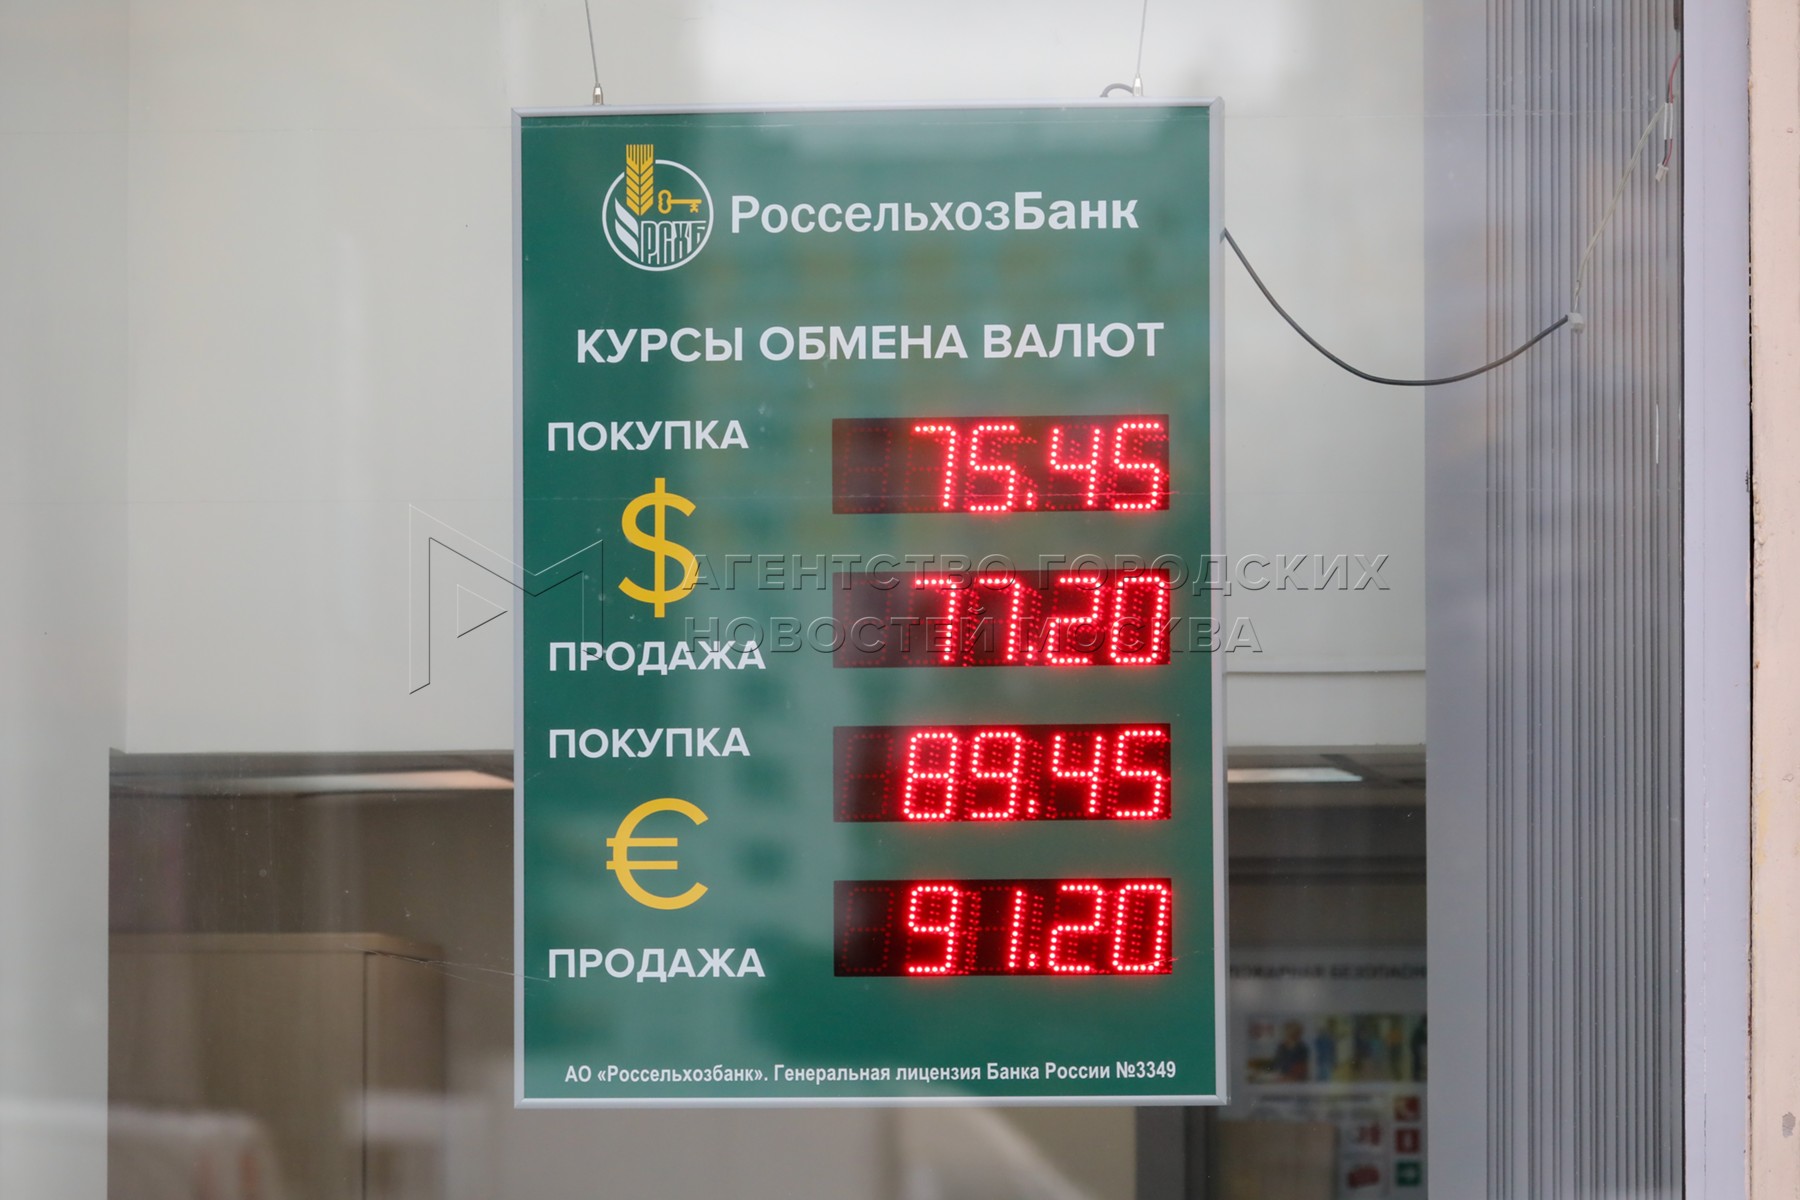 Купить валюту в банках москвы сегодня. Обменные пункты в Москве. Обмен валюты. Пункт обмена валюты. Пункты обмена валюты в Москве.